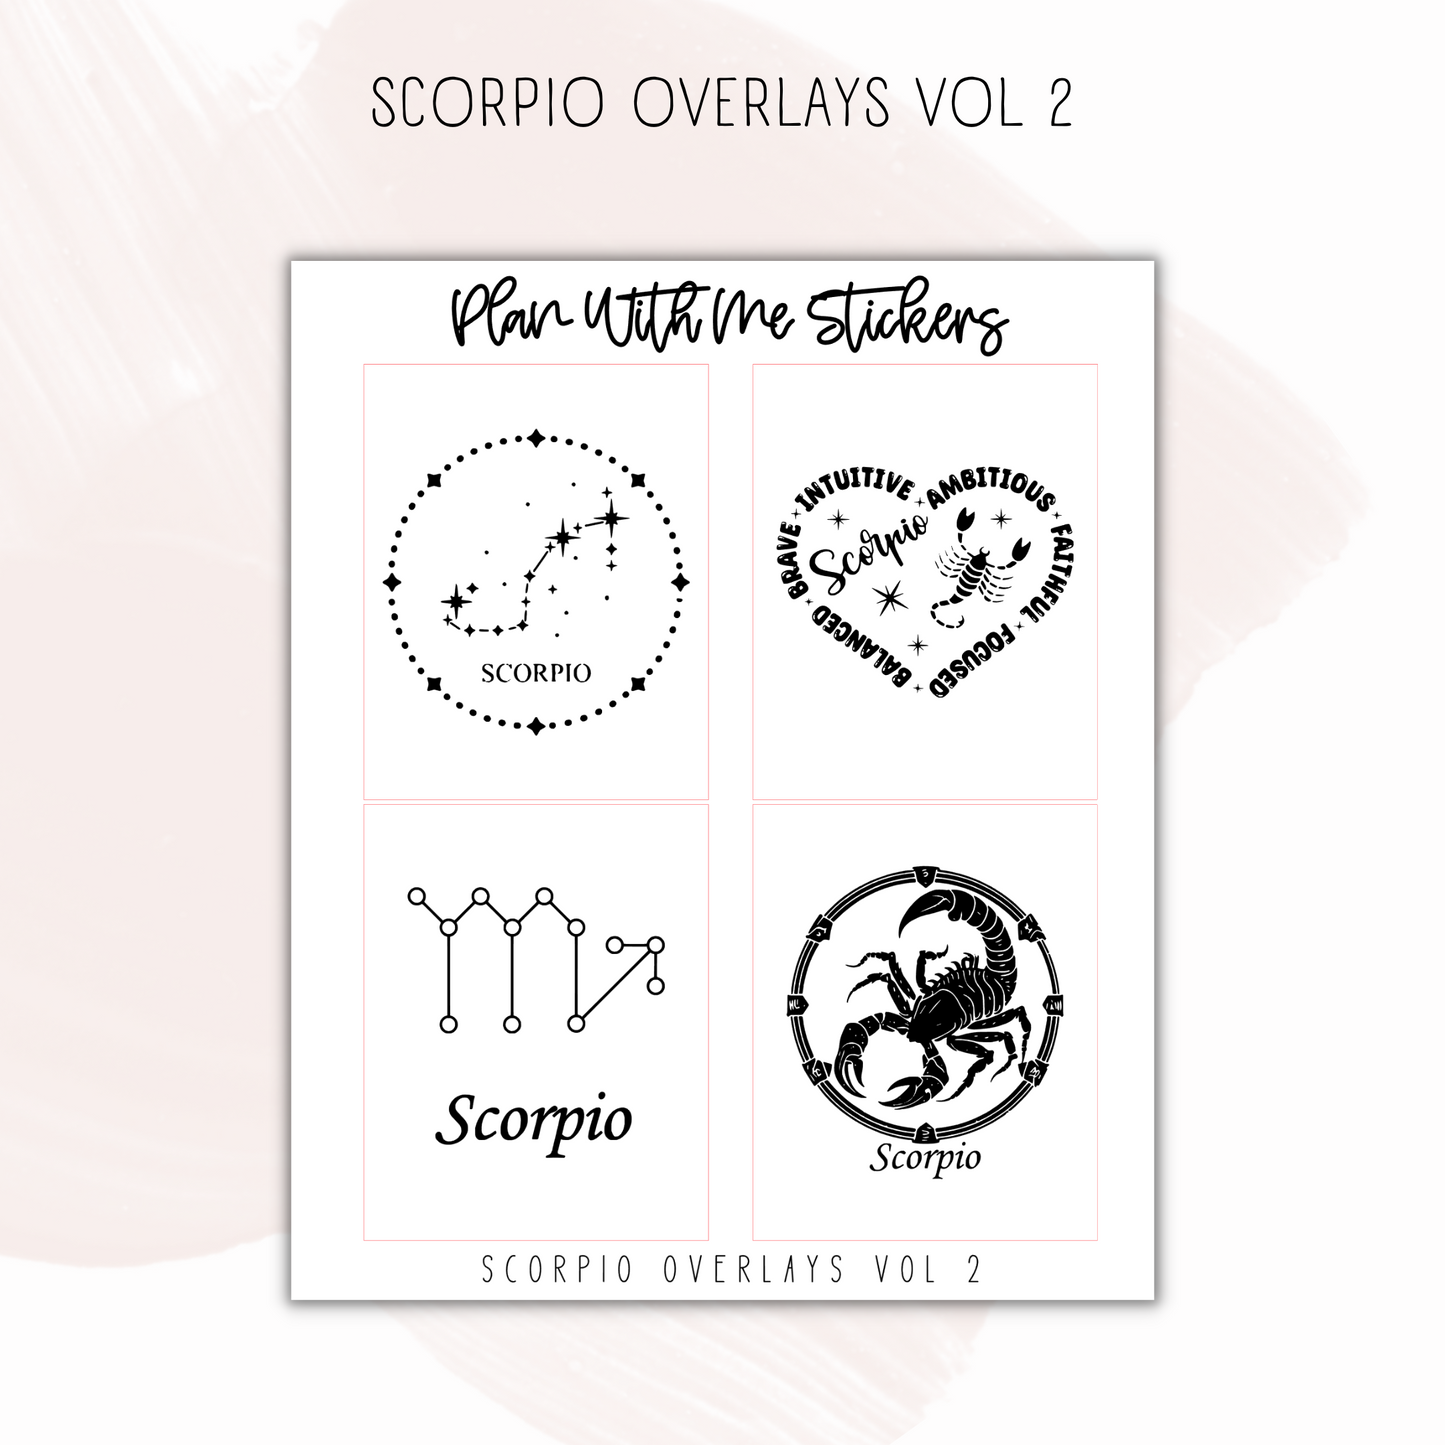 Scorpio Overlays Vol 2